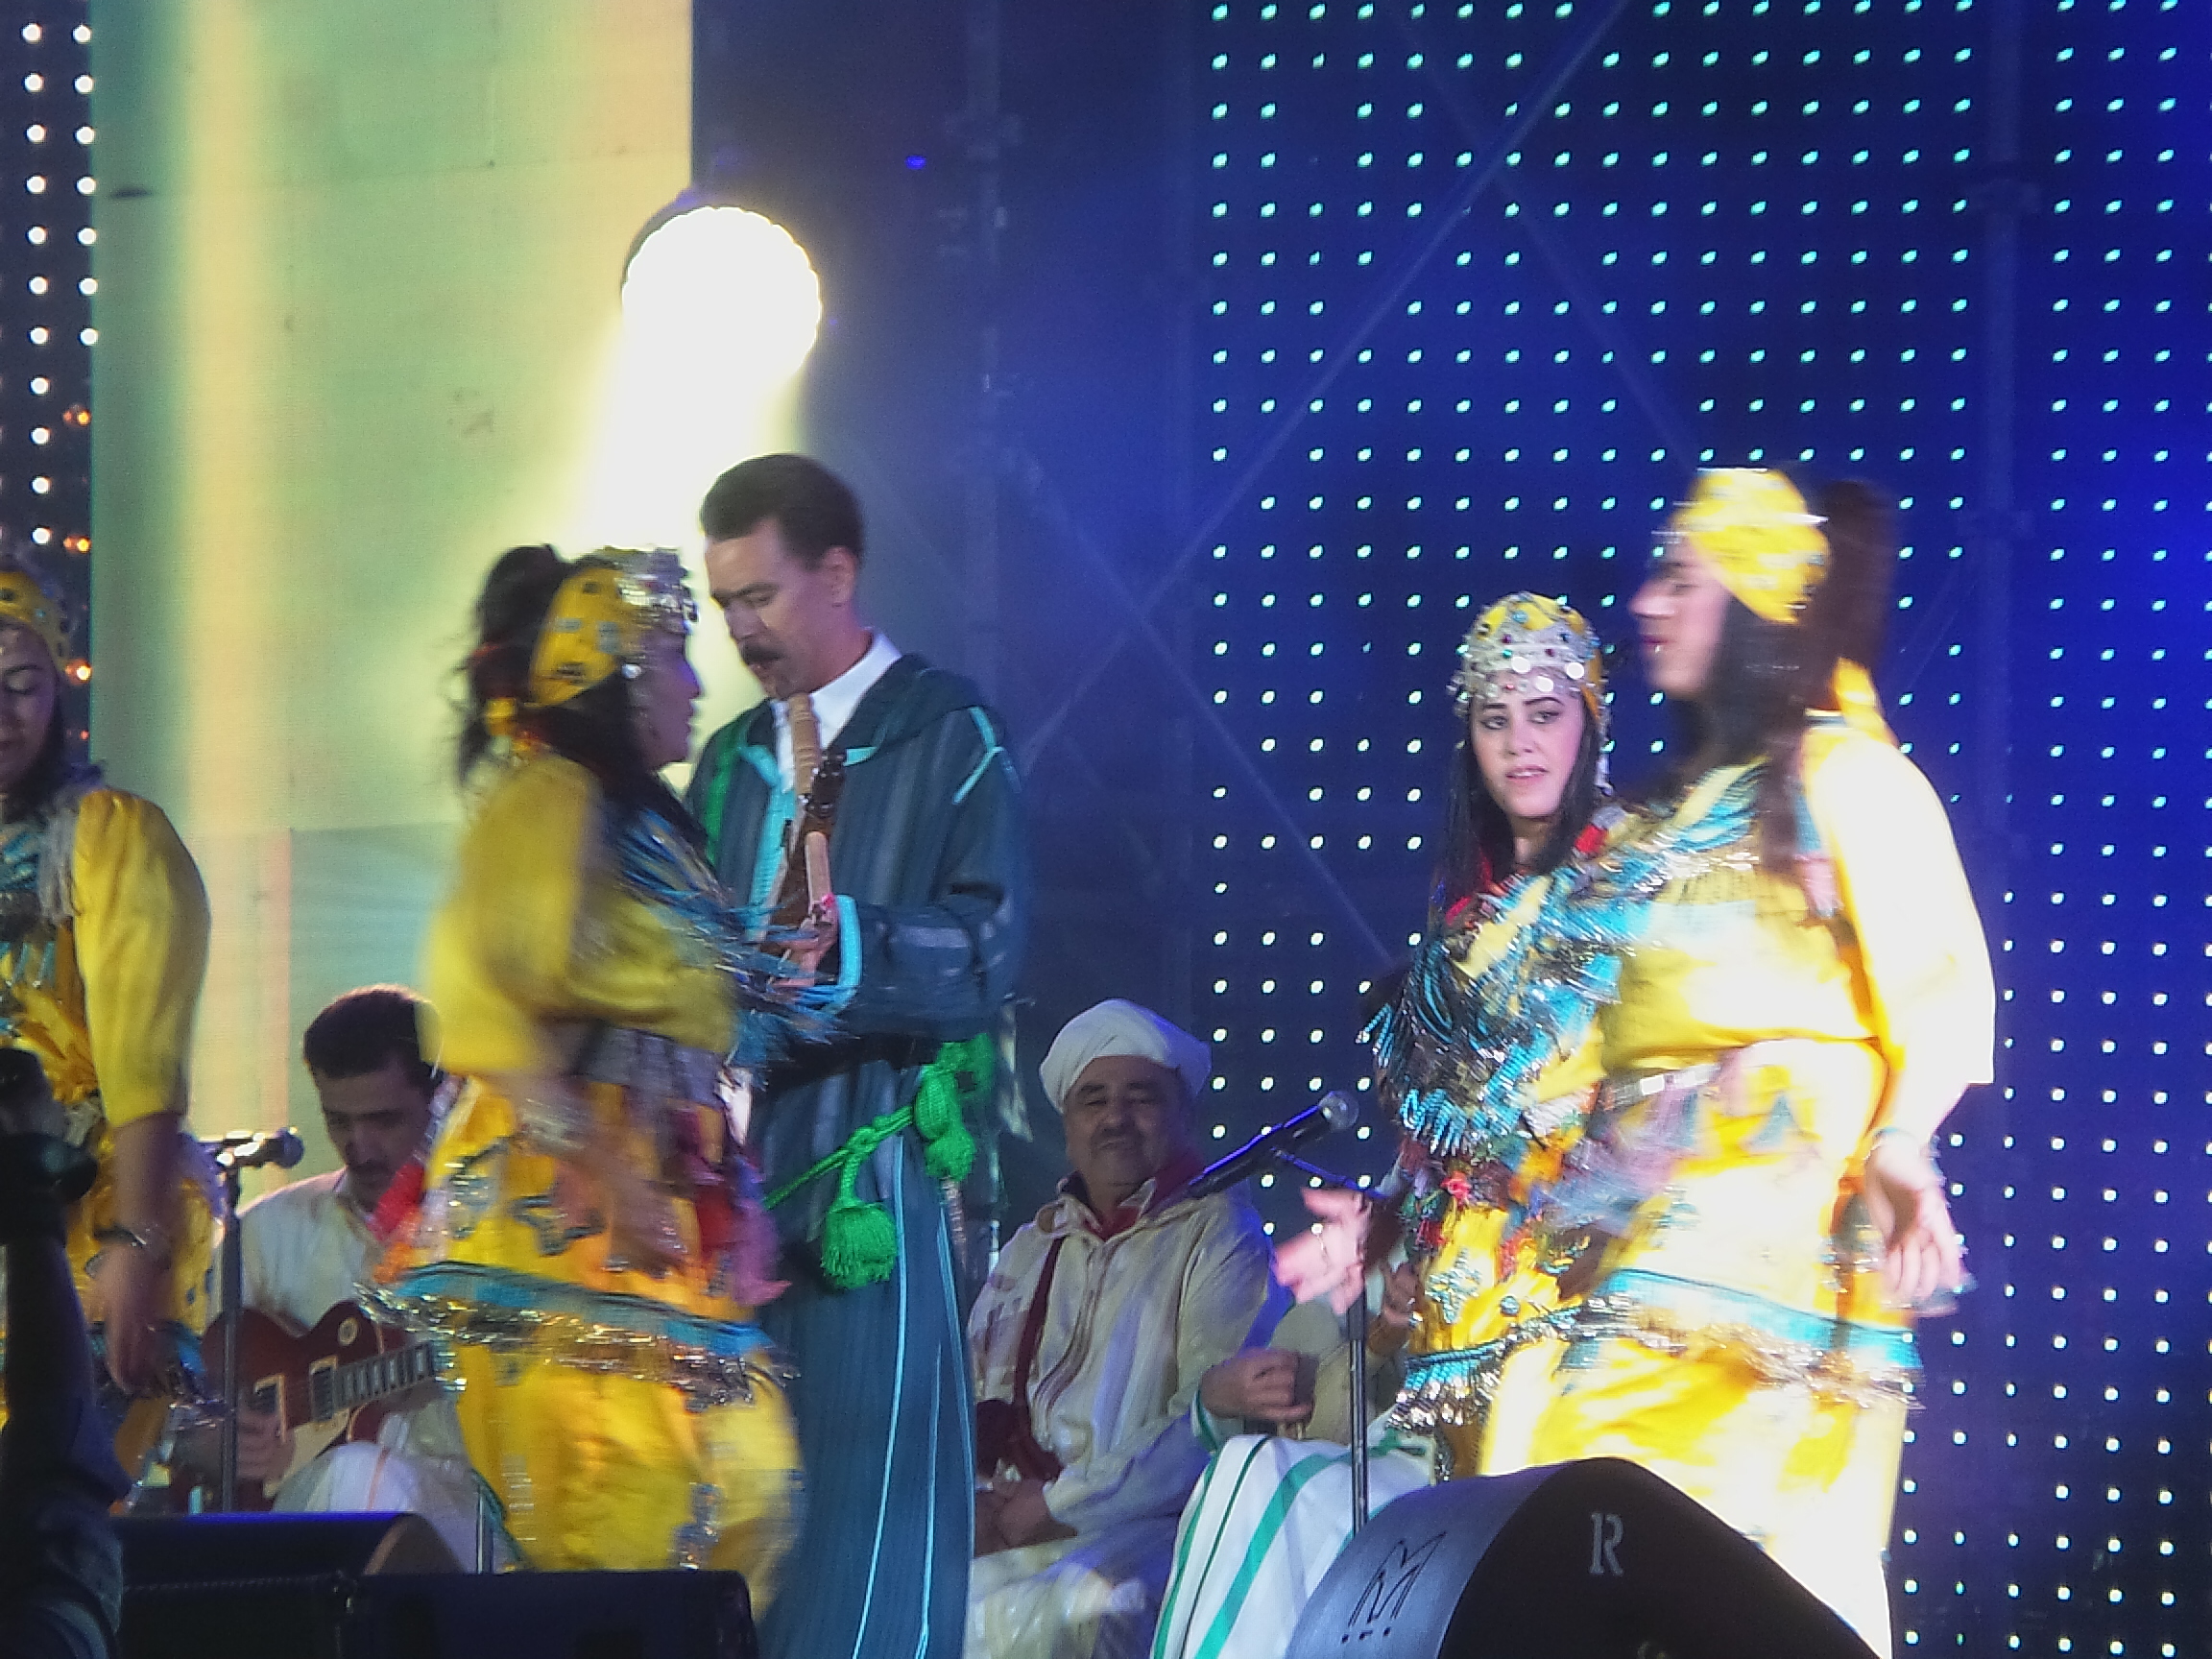 الرايس سعيد يفتتح مهرجان تيميتار للموسيقى الأمازيغية في أغادير (5)